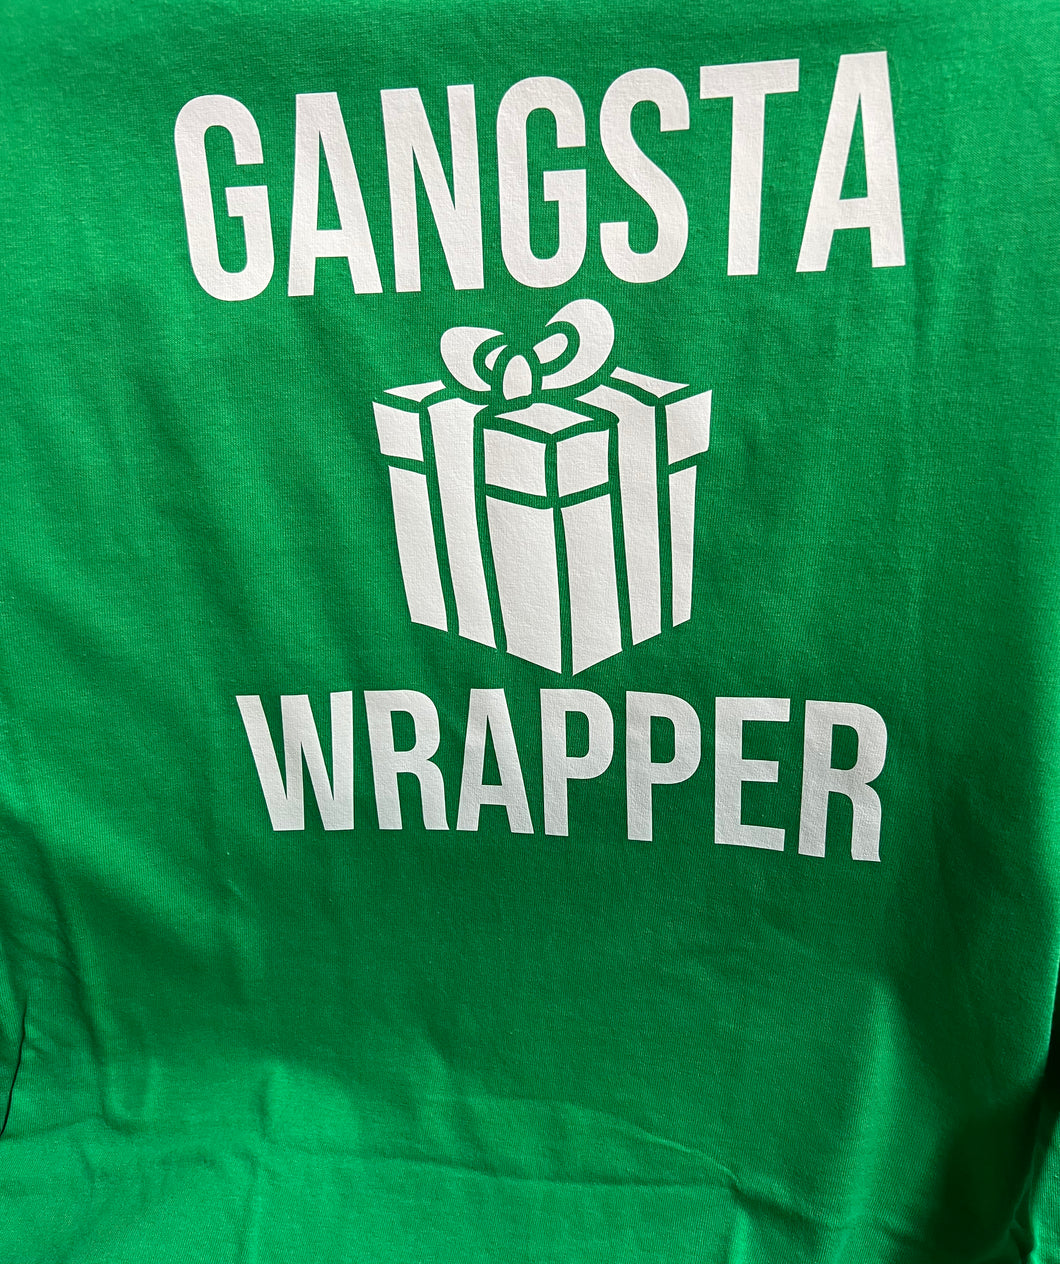 Gangsta Wrapper Shirt - Size Medium